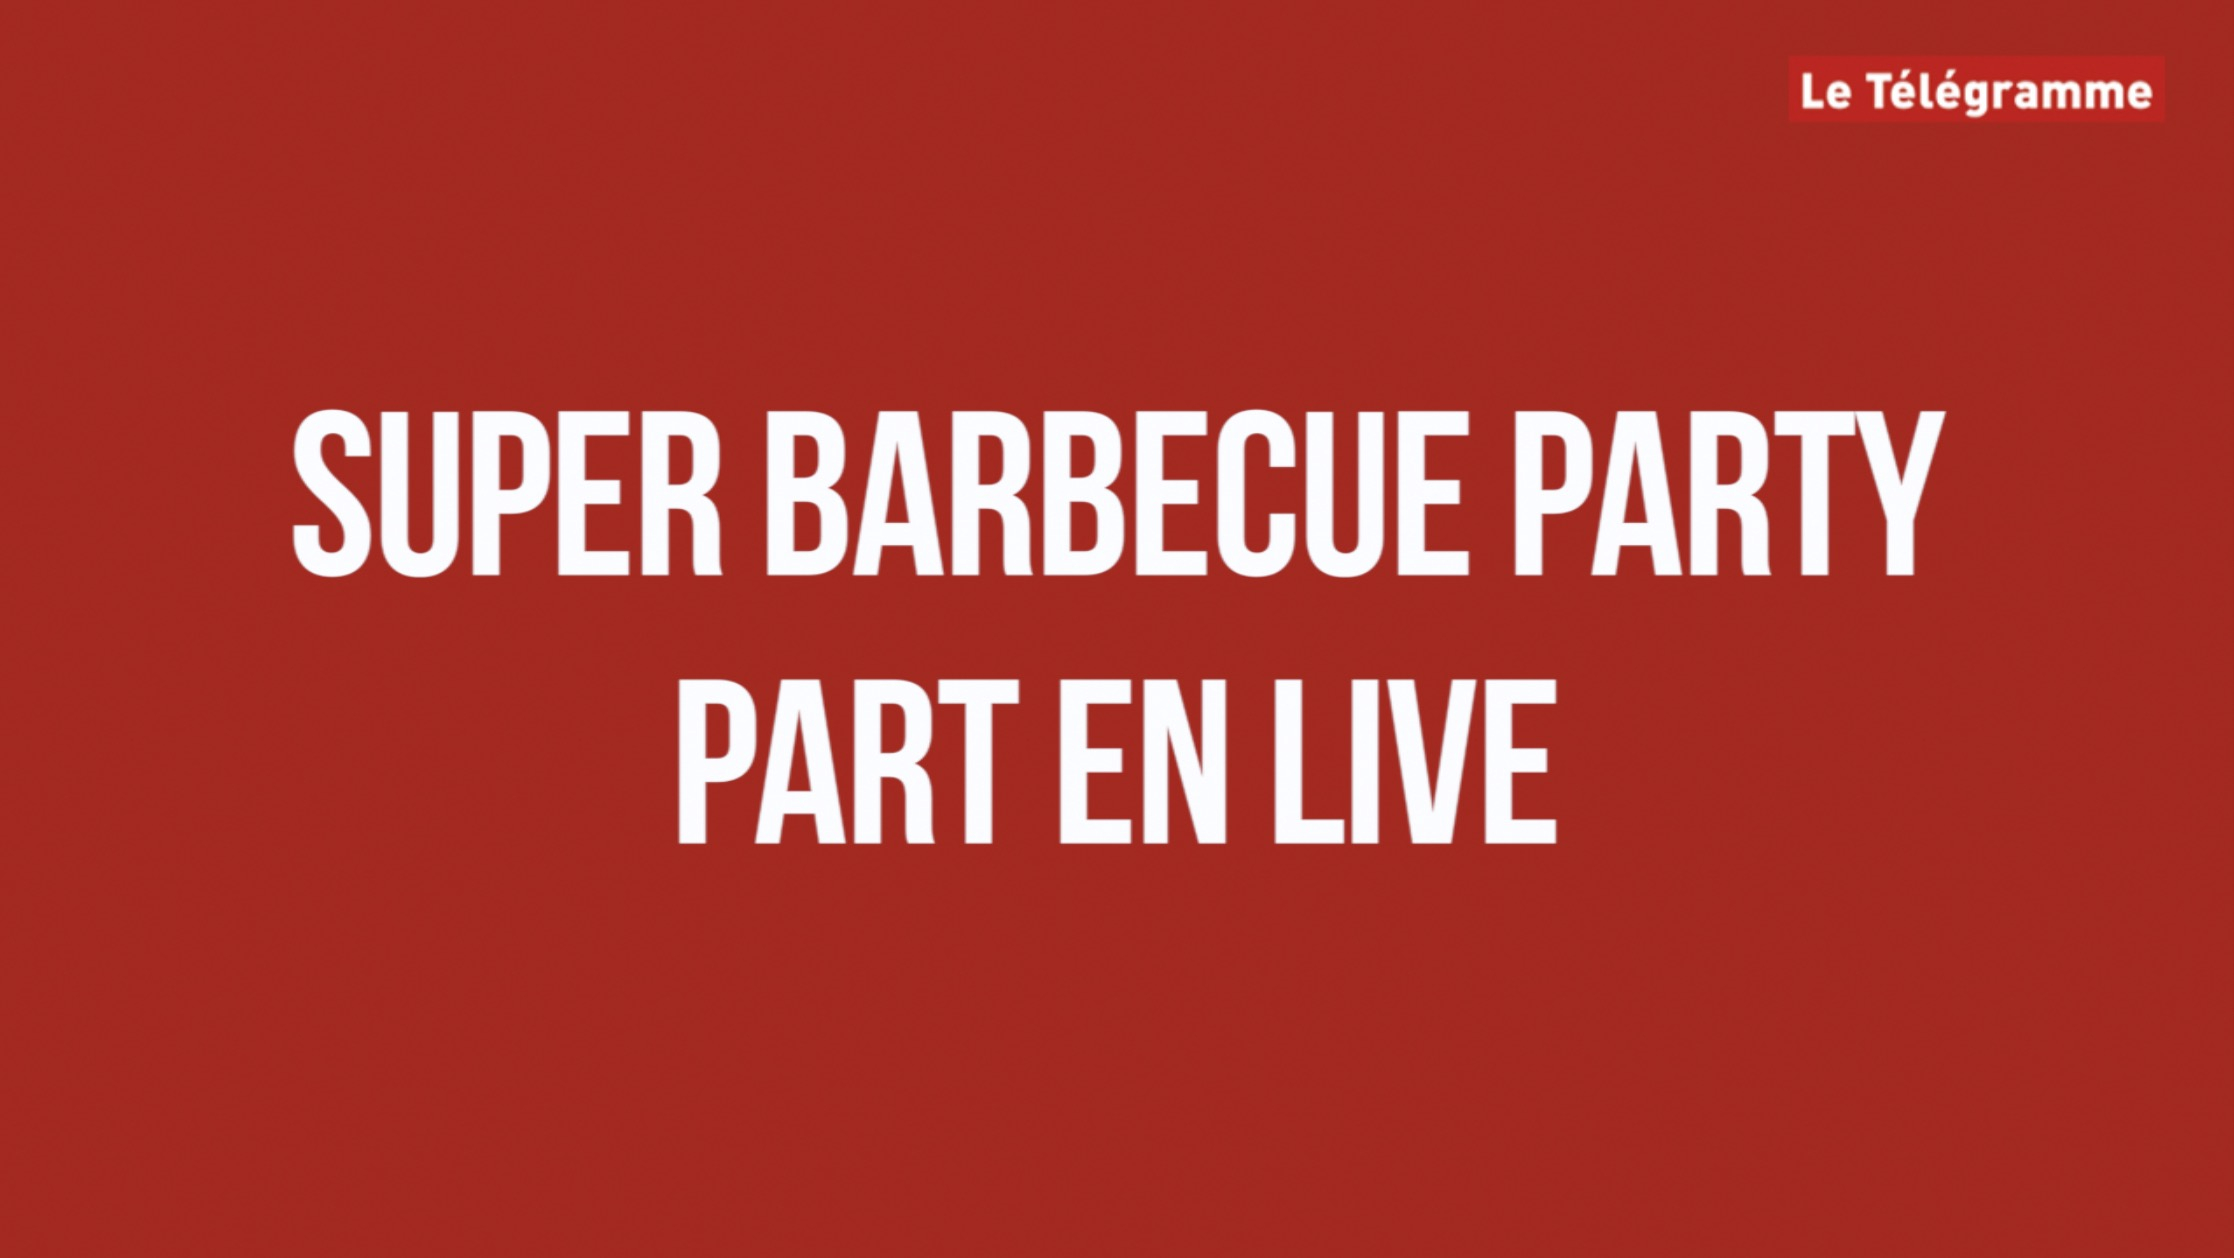 Super Barbecue Party part en live (Le Télégramme)